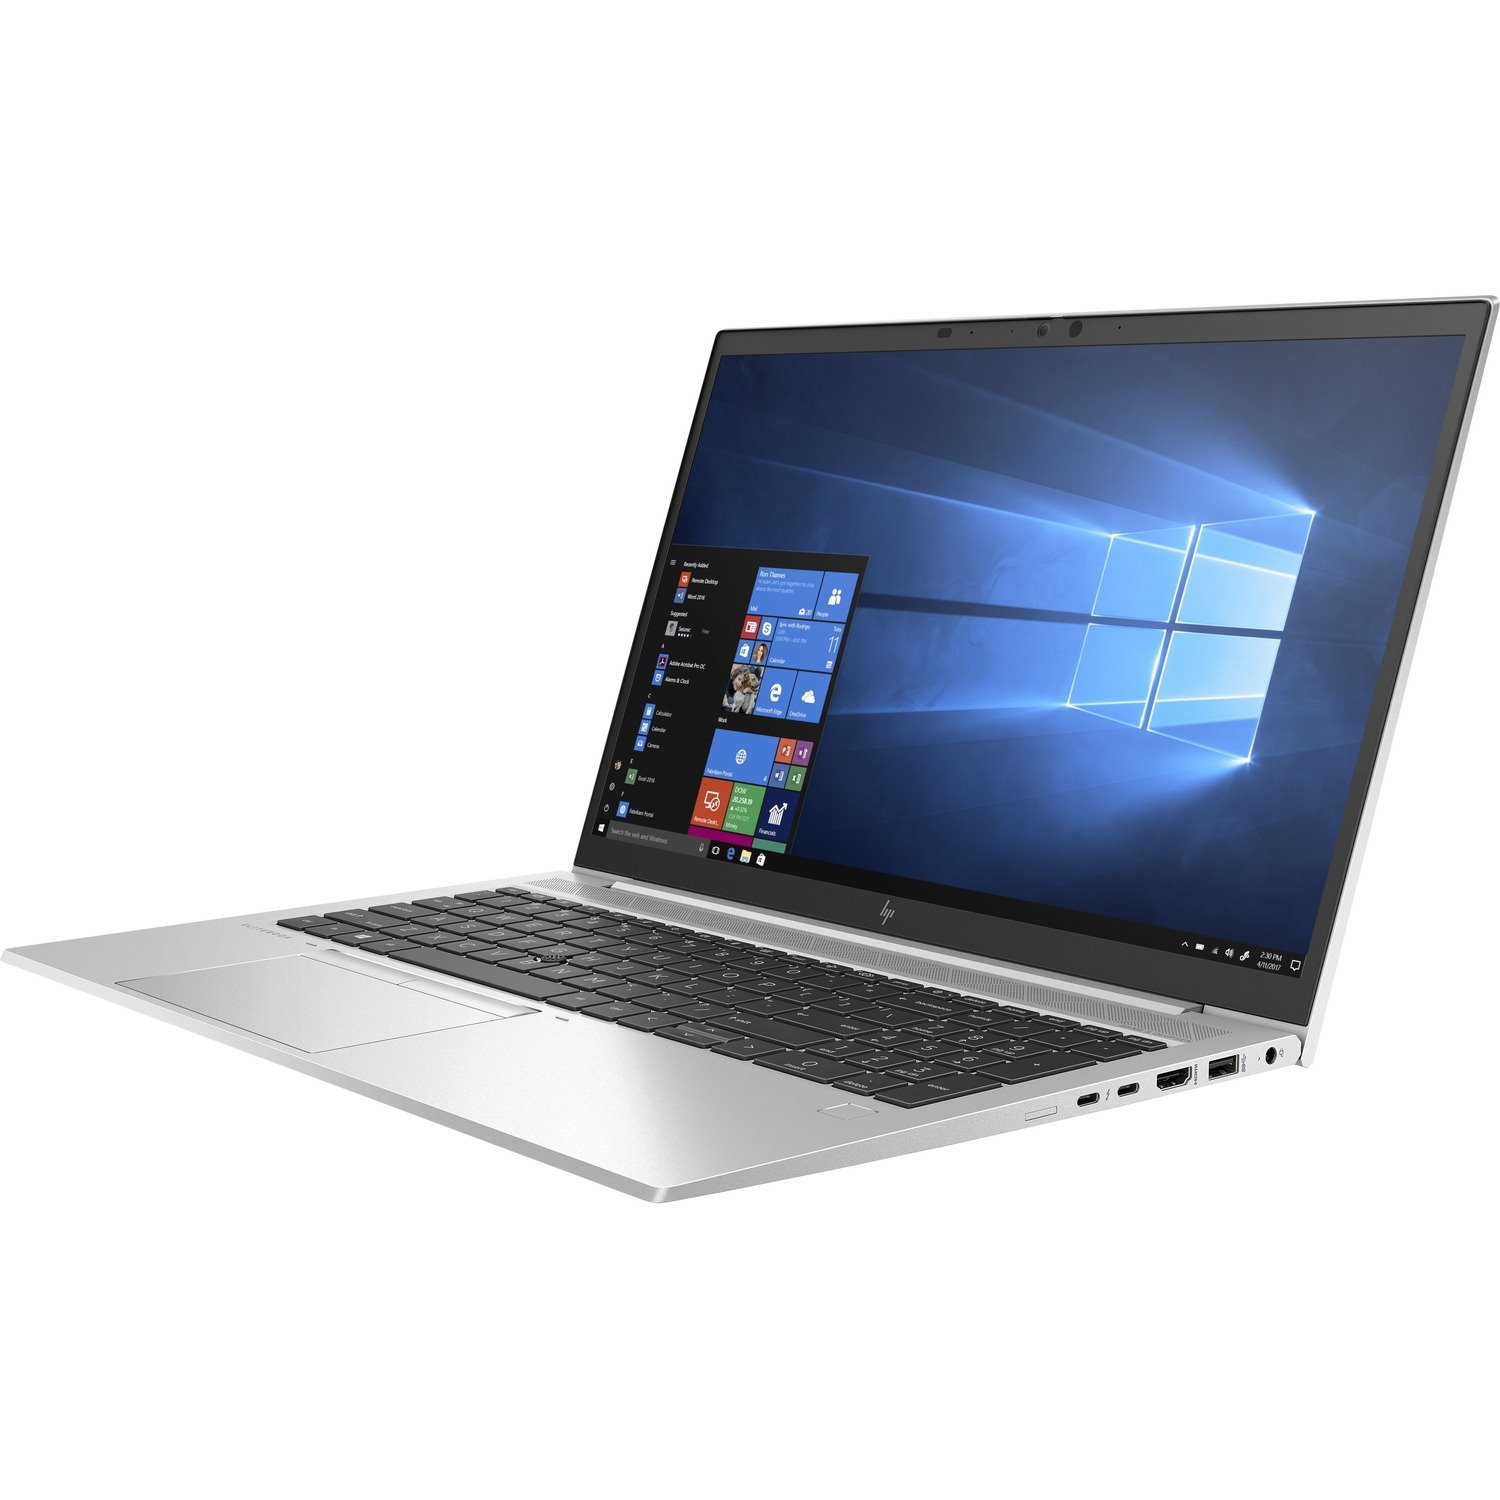 HP EliteBook 850 G7 39.6 cm (15.6") Notebook - Intel Core i5 10th Gen i5-10210U Quad-core (4 Core) 1.60 GHz - 8 GB Total RAM - 256 GB SSD